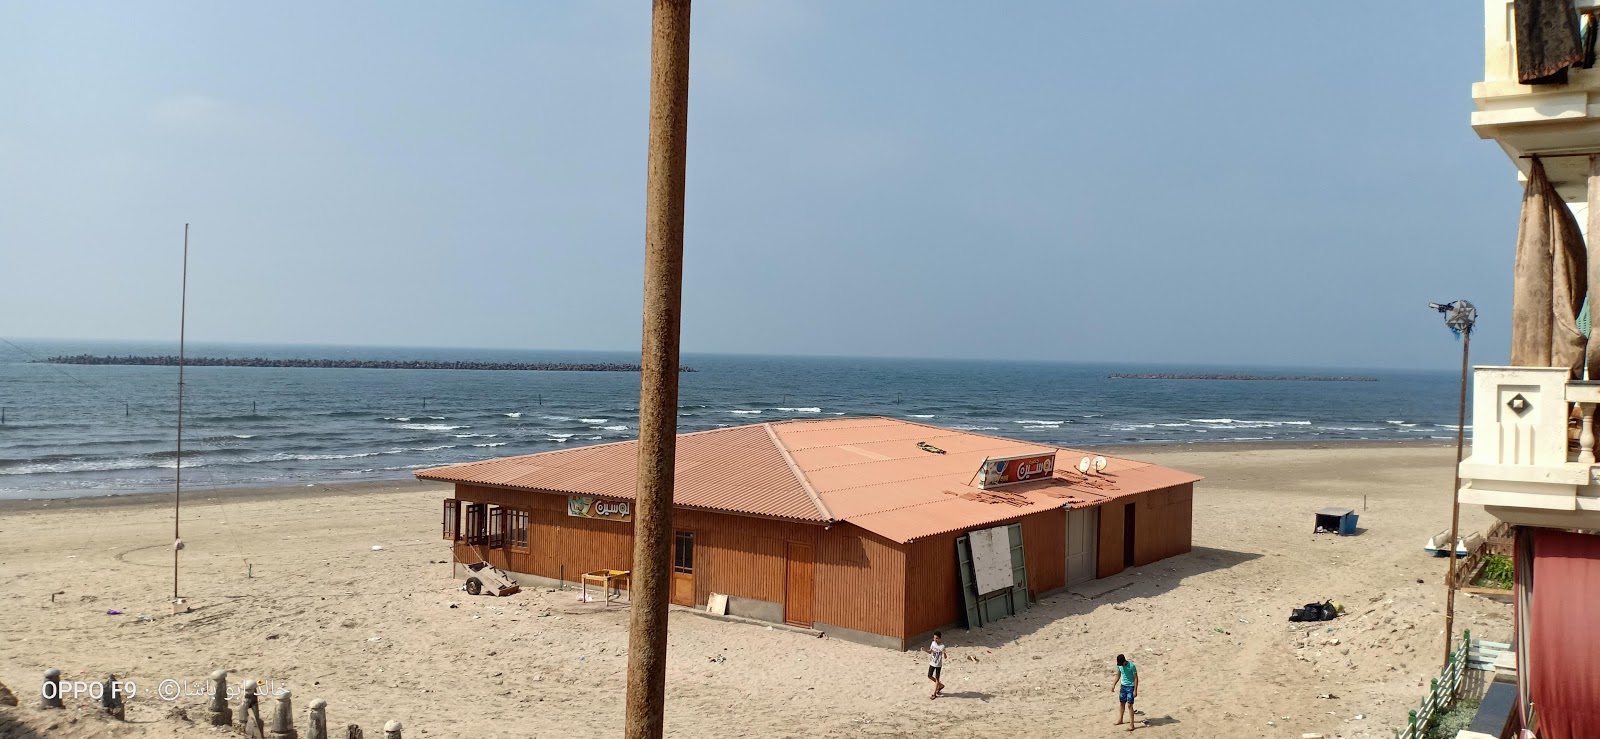 Foto de Ras El-Bar Beach - lugar popular entre los conocedores del relax